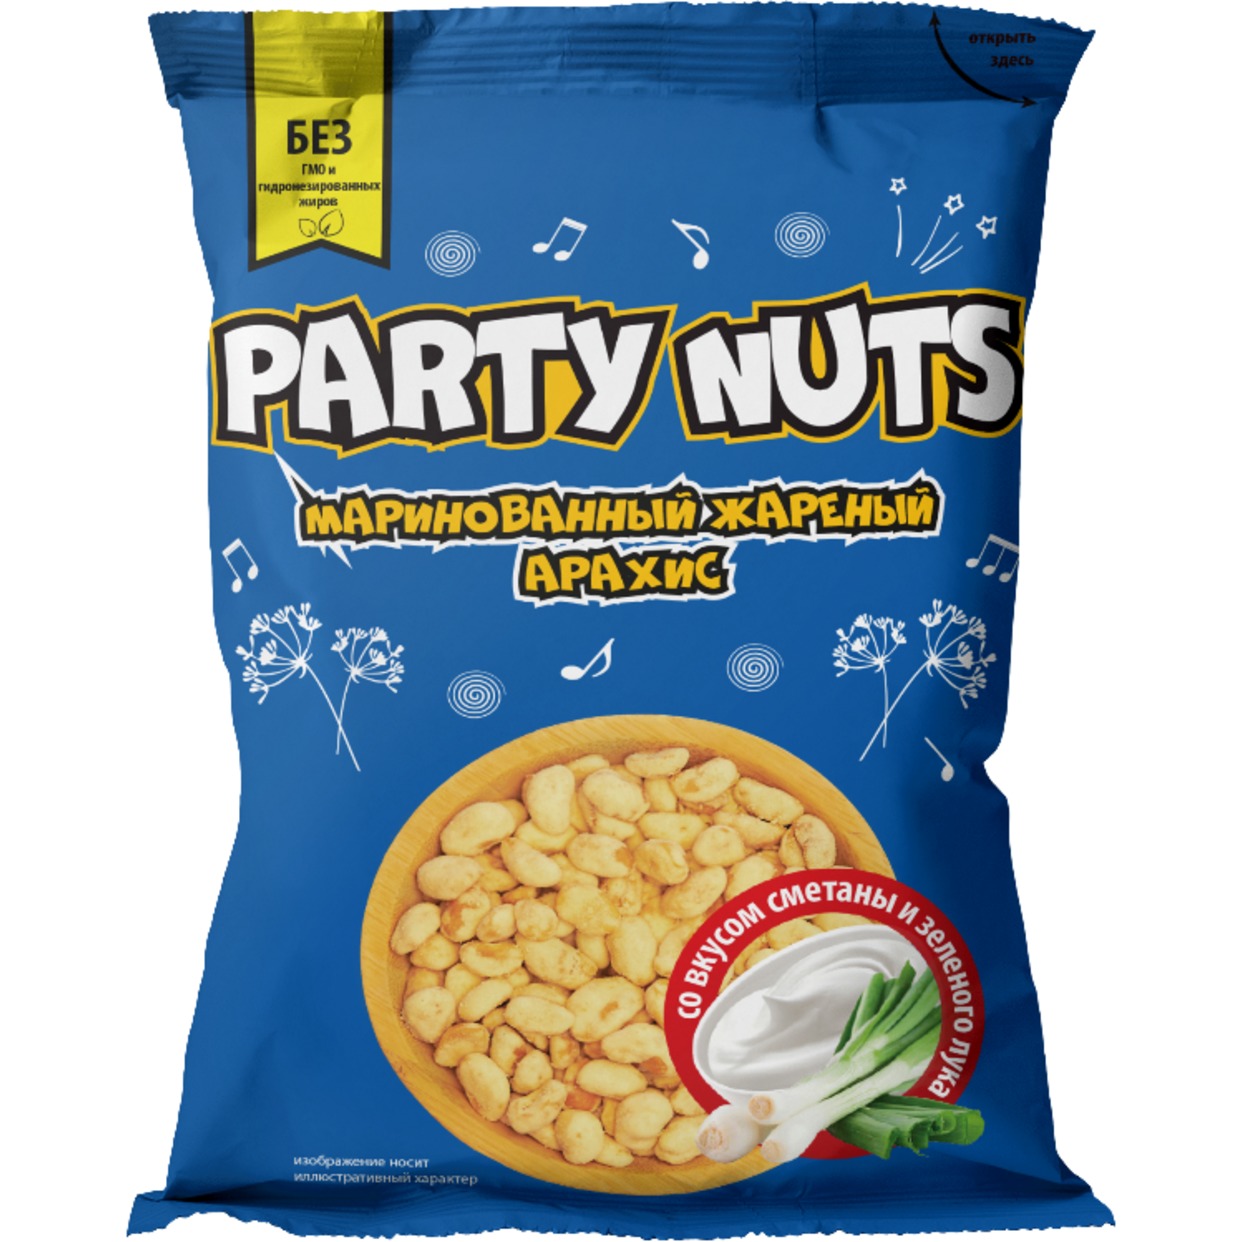 Маринованный жареный арахис со вкусом сметаны и зеленого лука "PARTY NUTS" 70 гр по акции в Пятерочке